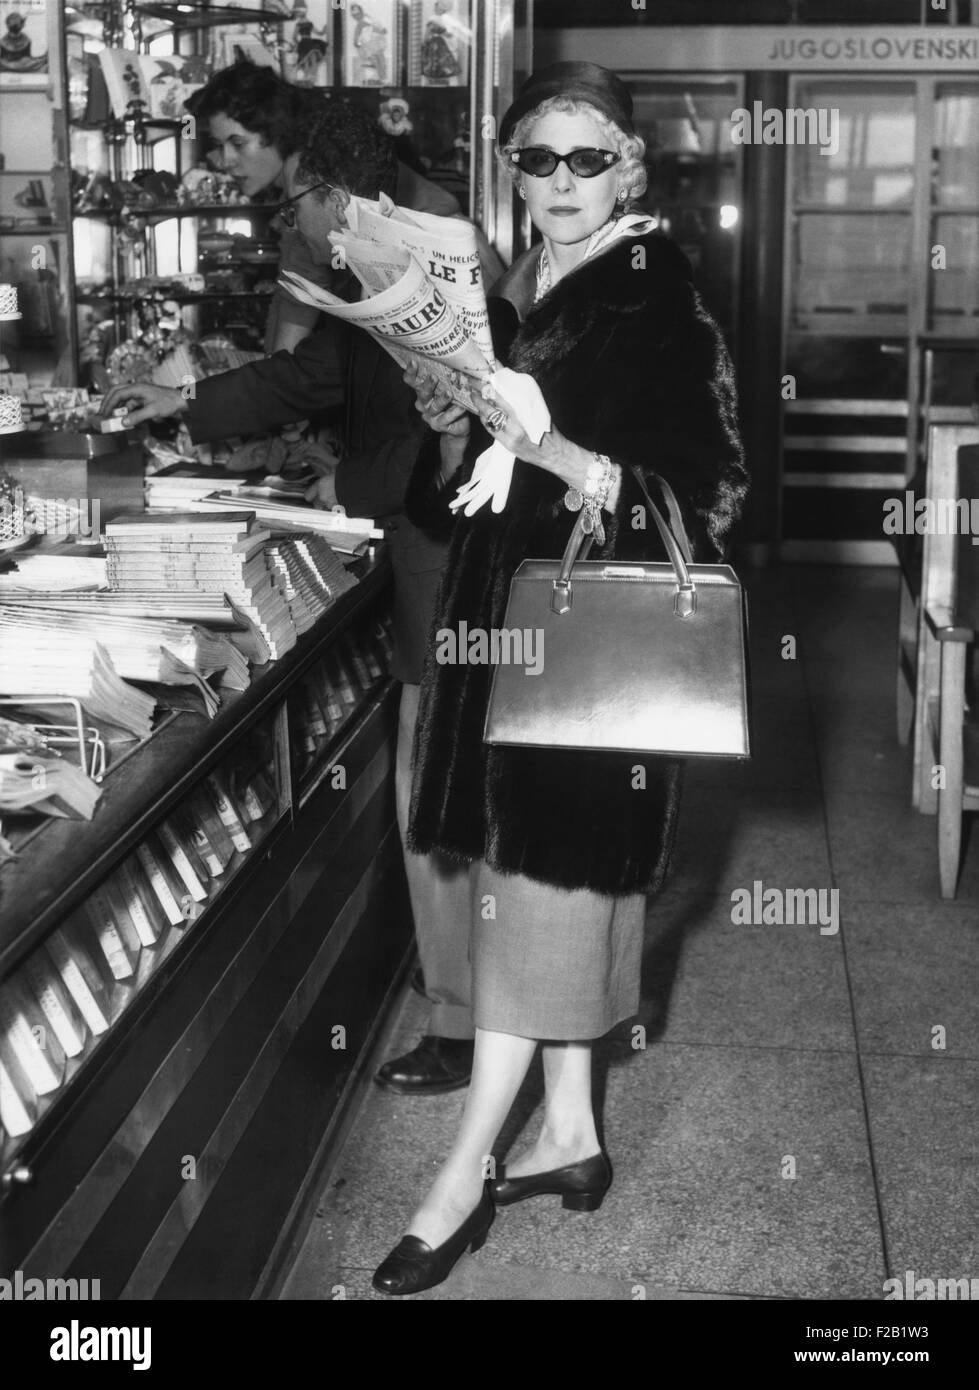 Clare Booth Luce, à un kiosque à journaux à Paris Orly Aéroport avant d'embarquer dans un avion pour Rome. Le 12 septembre 1957. CSU (2015  8 588) Banque D'Images